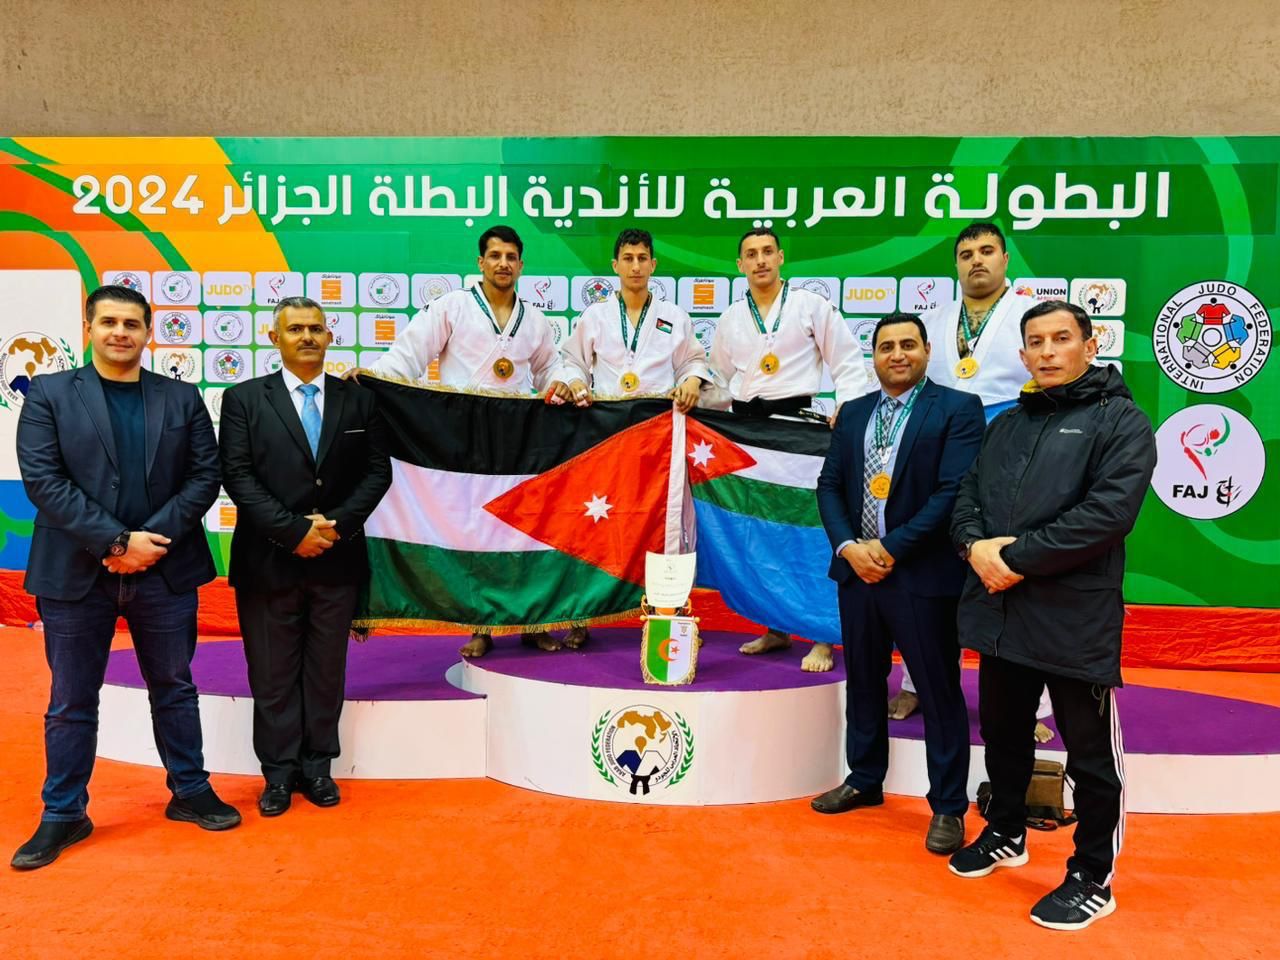 فريق الأمن العام للجودو يحقق إنجازاً متميزاً ويحصد برونزية البطولة العربية للأندية.